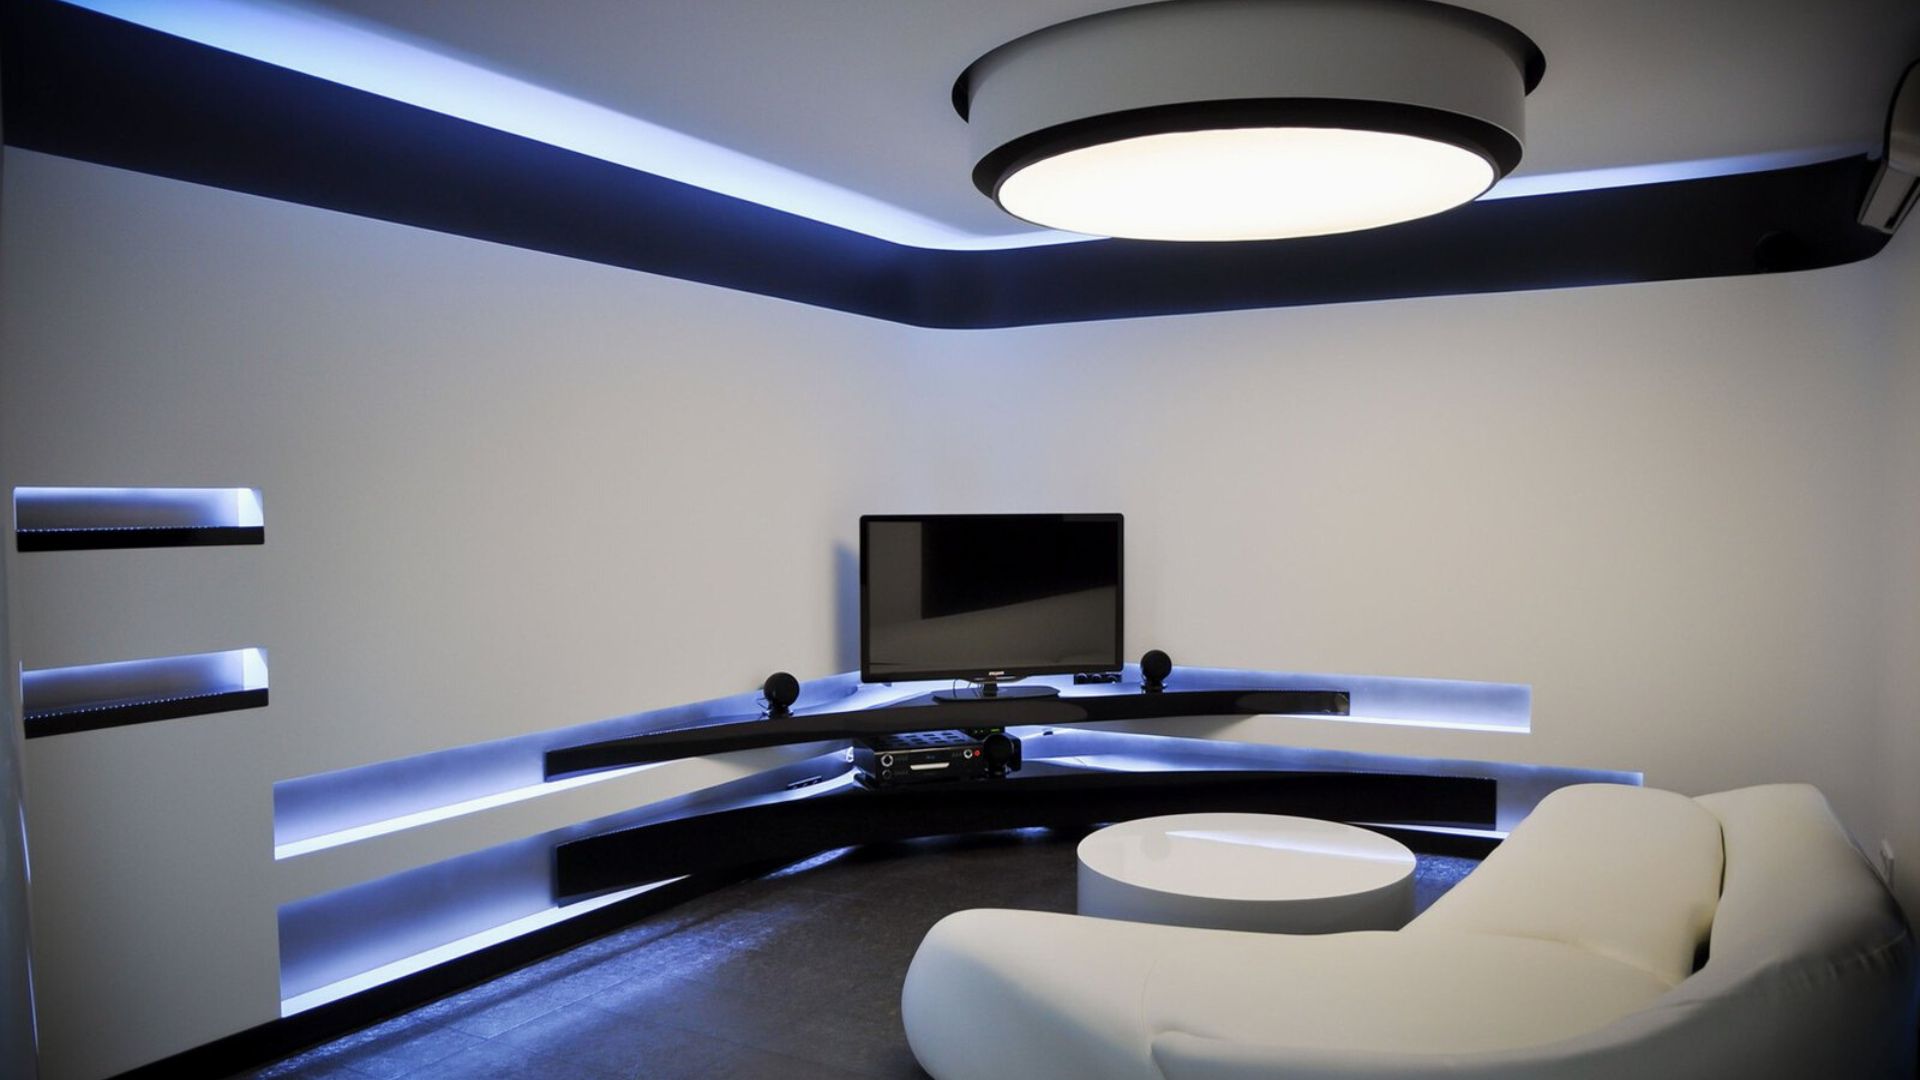 Thiết kế nội thất phòng giải trí theo phong cách Hitech mang đến sự hiện đại và tiện nghi | Nguồn: Internet. 